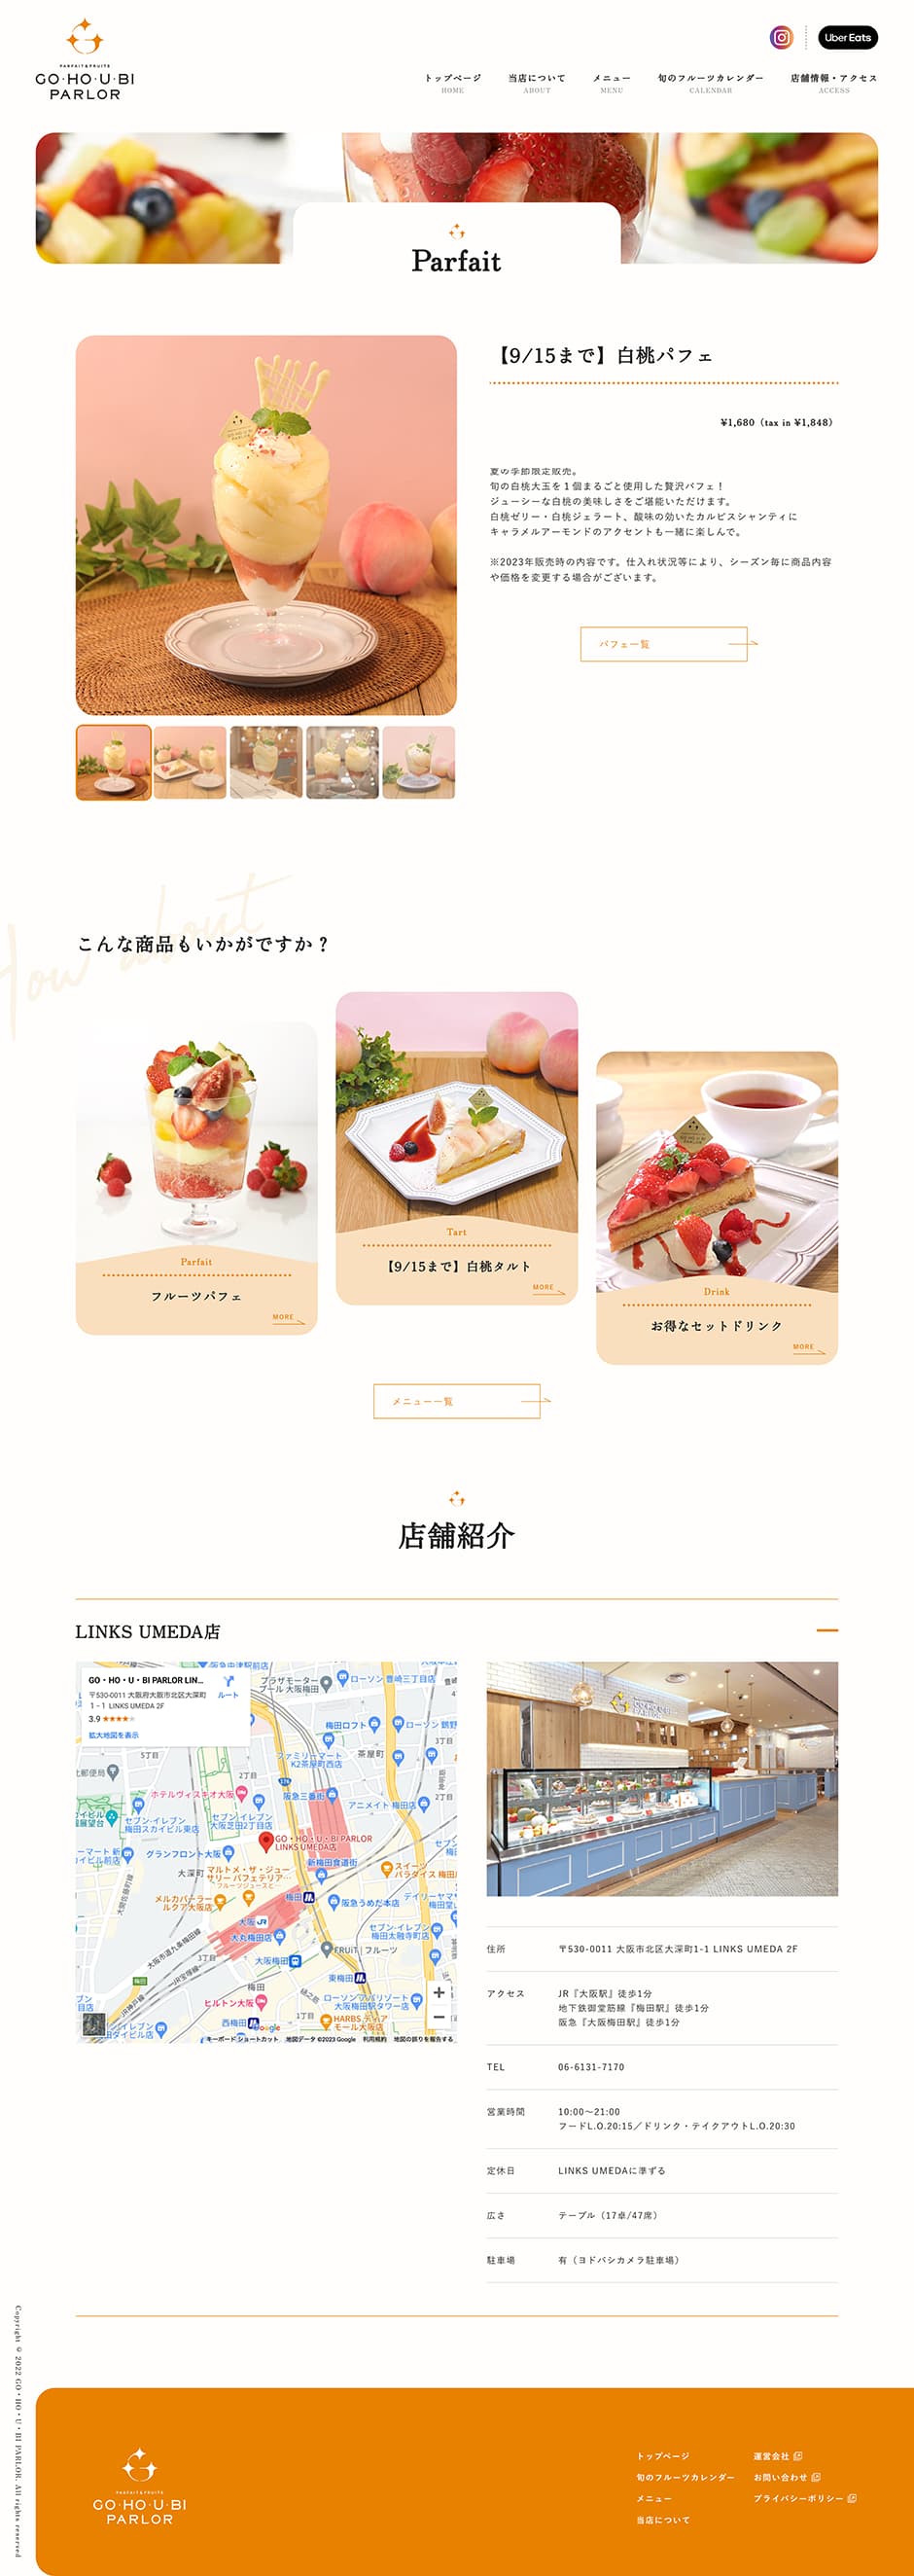 GO・HO・U・BI PARLORさまのホームページデザイン